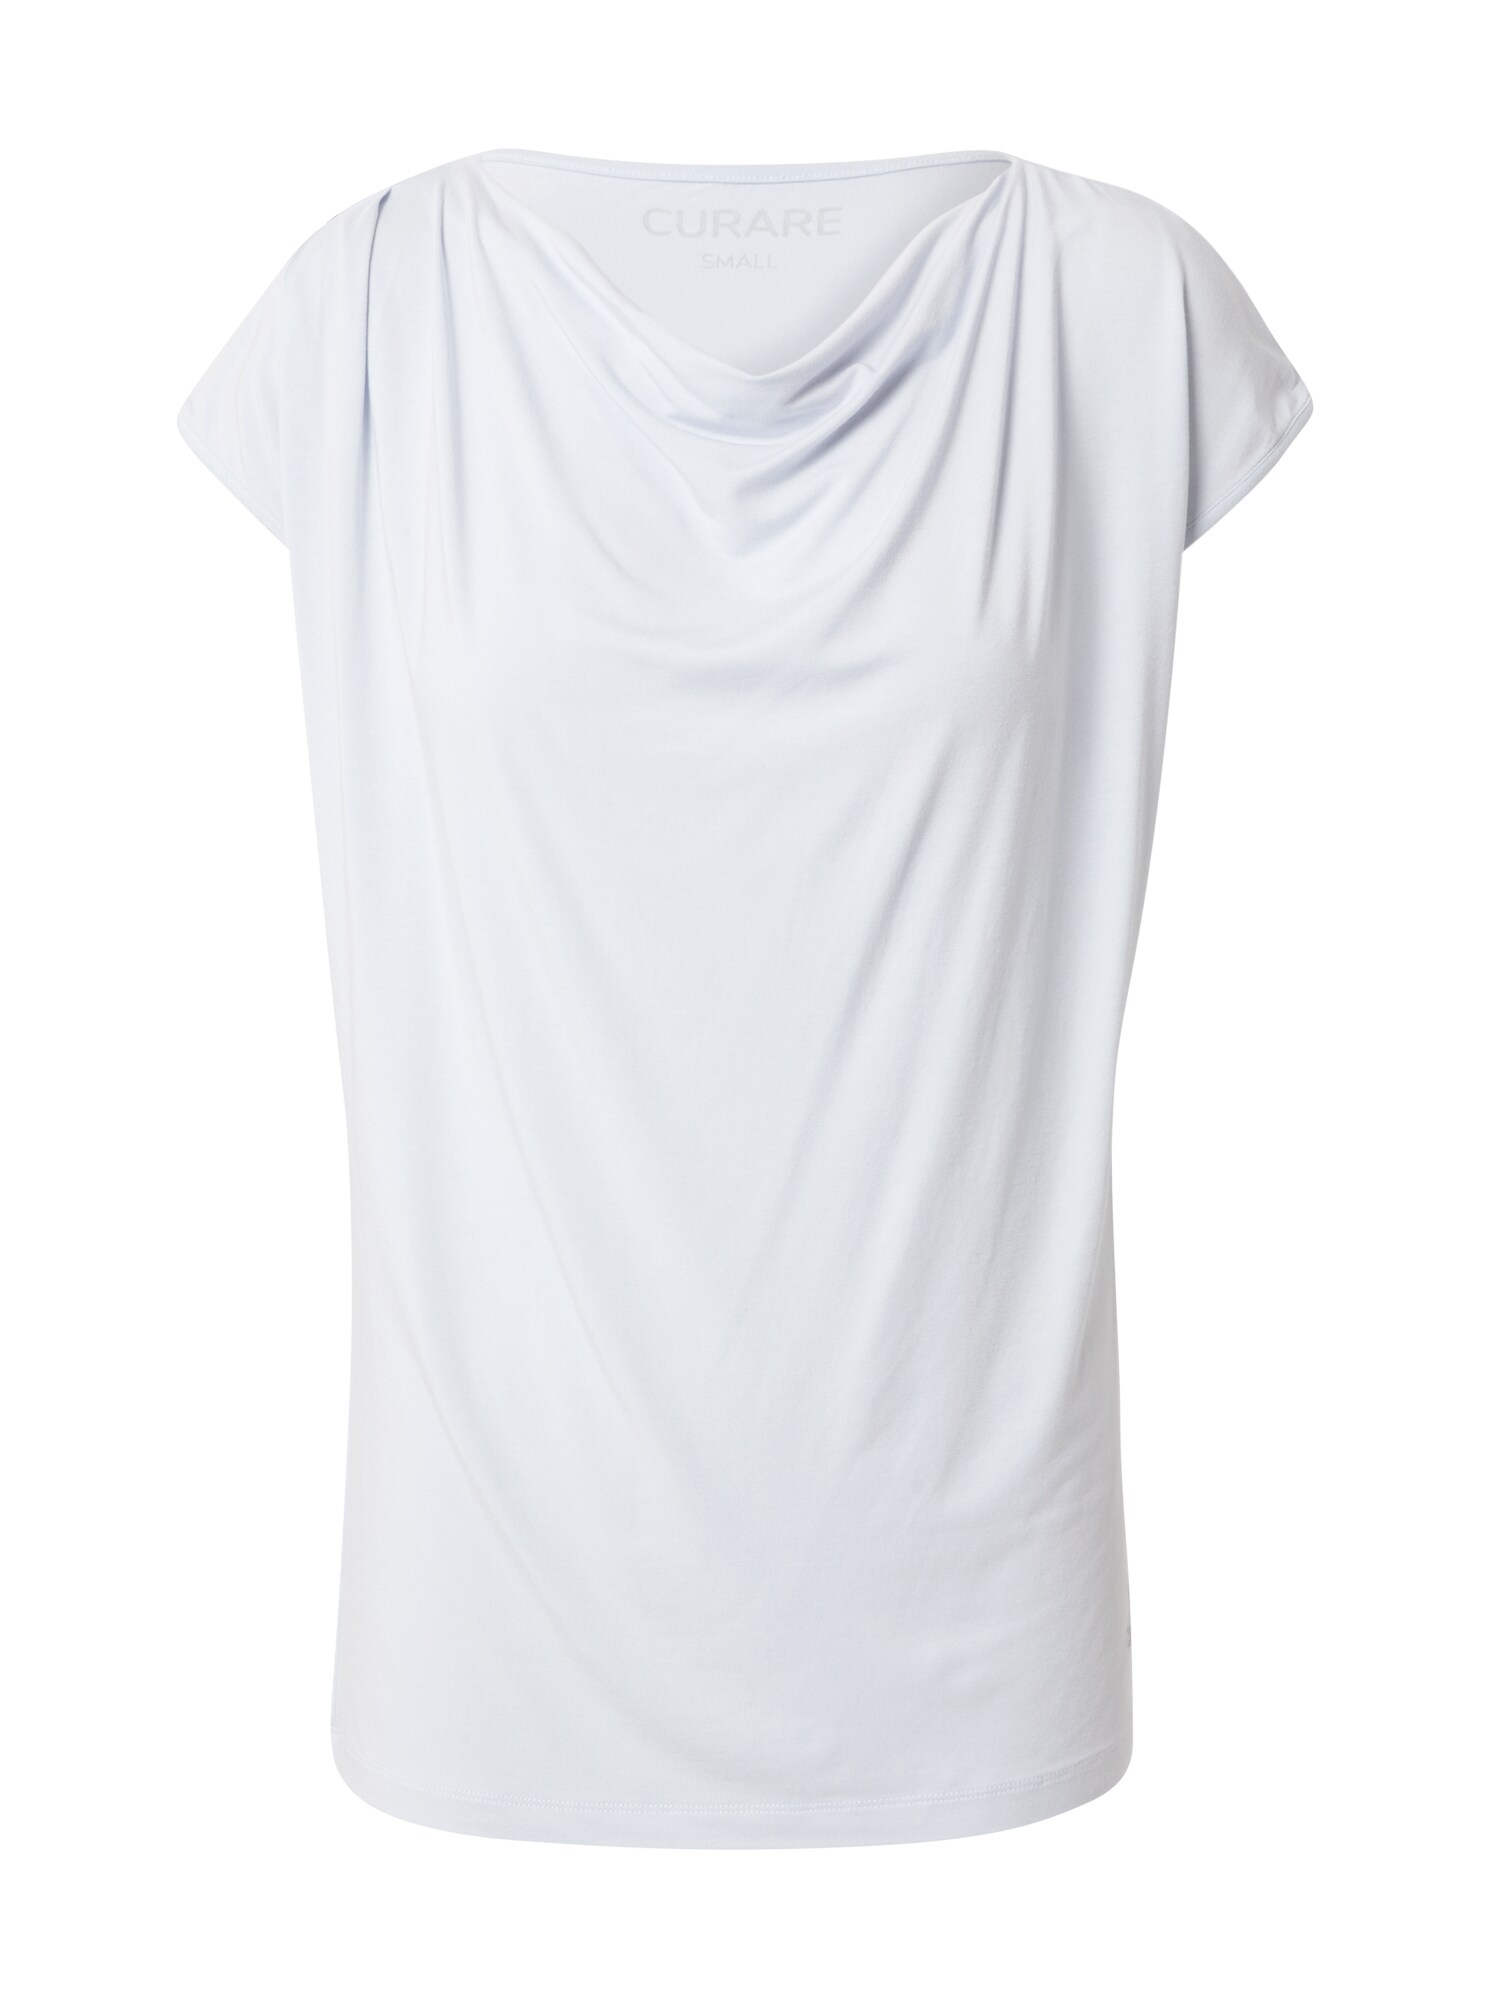 CURARE Yogawear Sportiniai marškinėliai  balta